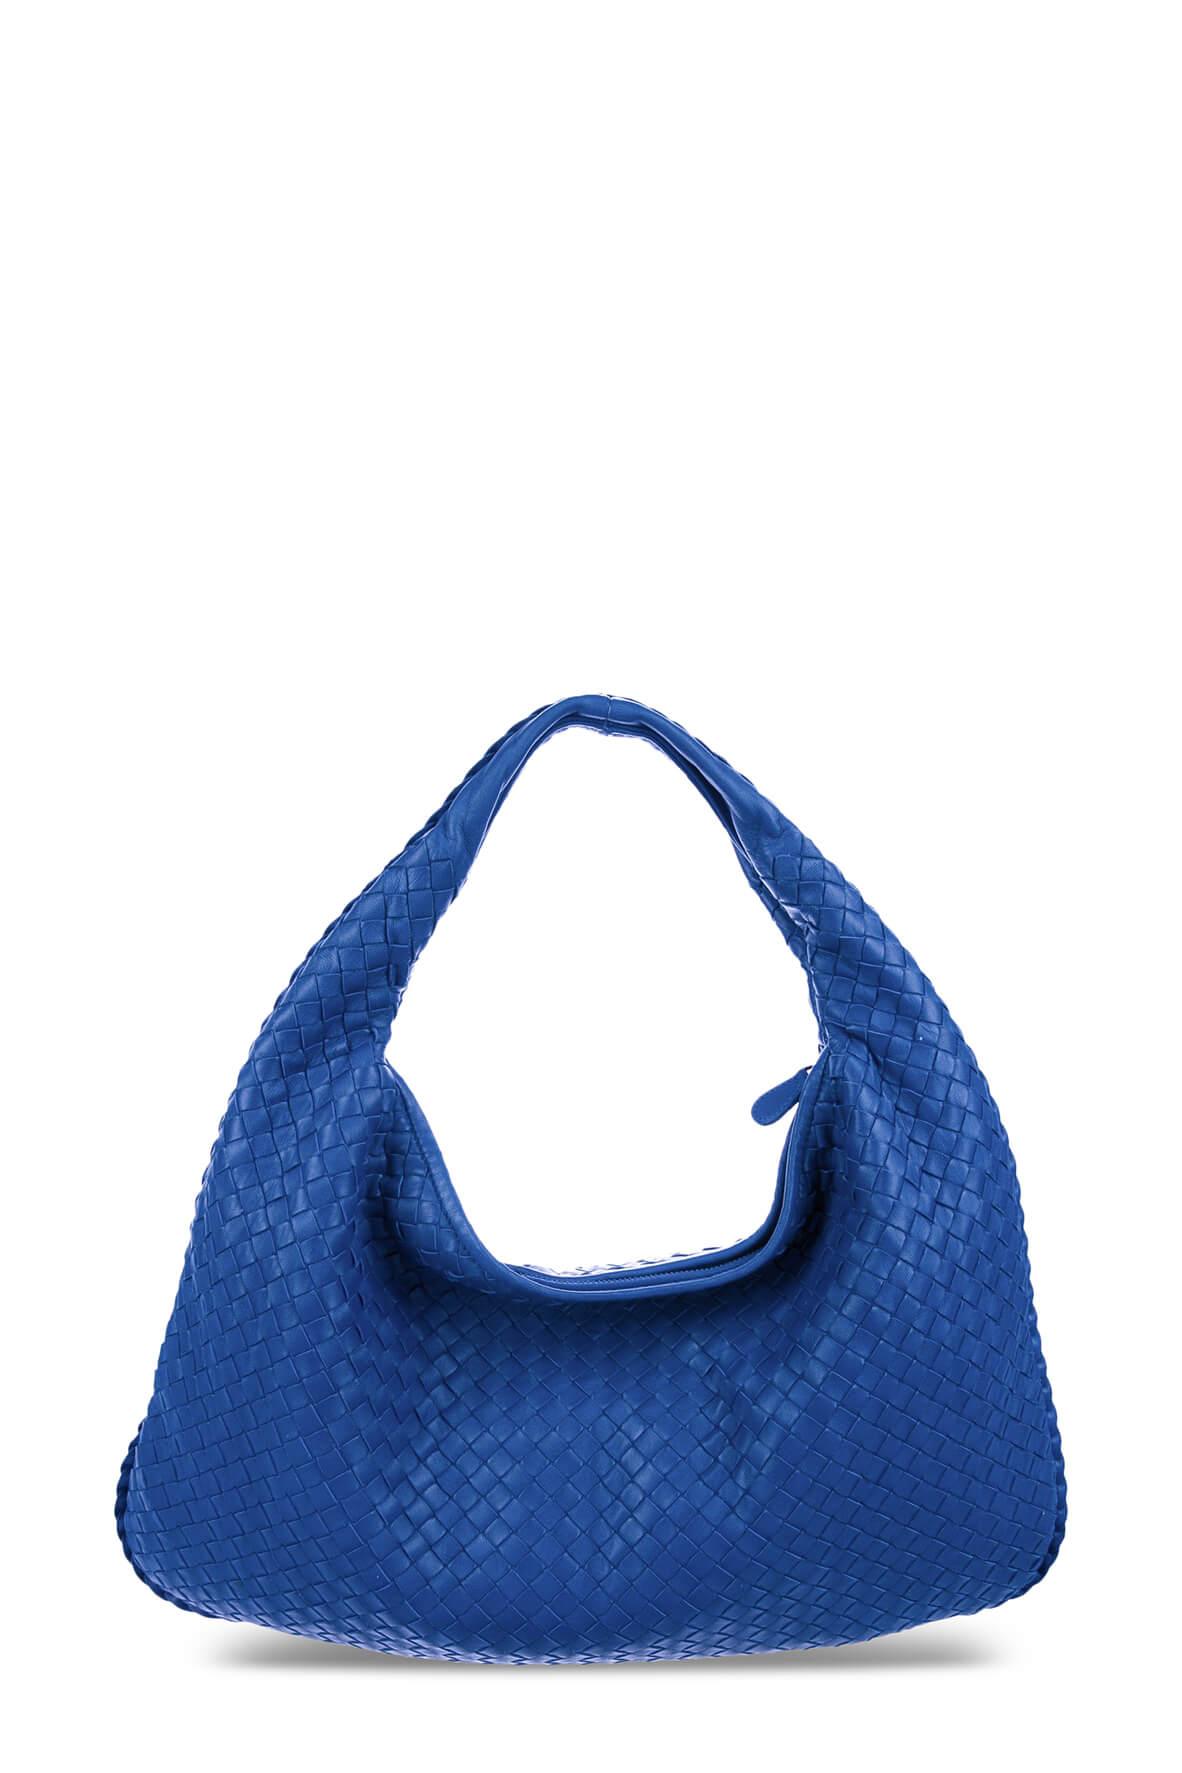 Bottega Veneta Large Veneta Hobo Bag in Blue